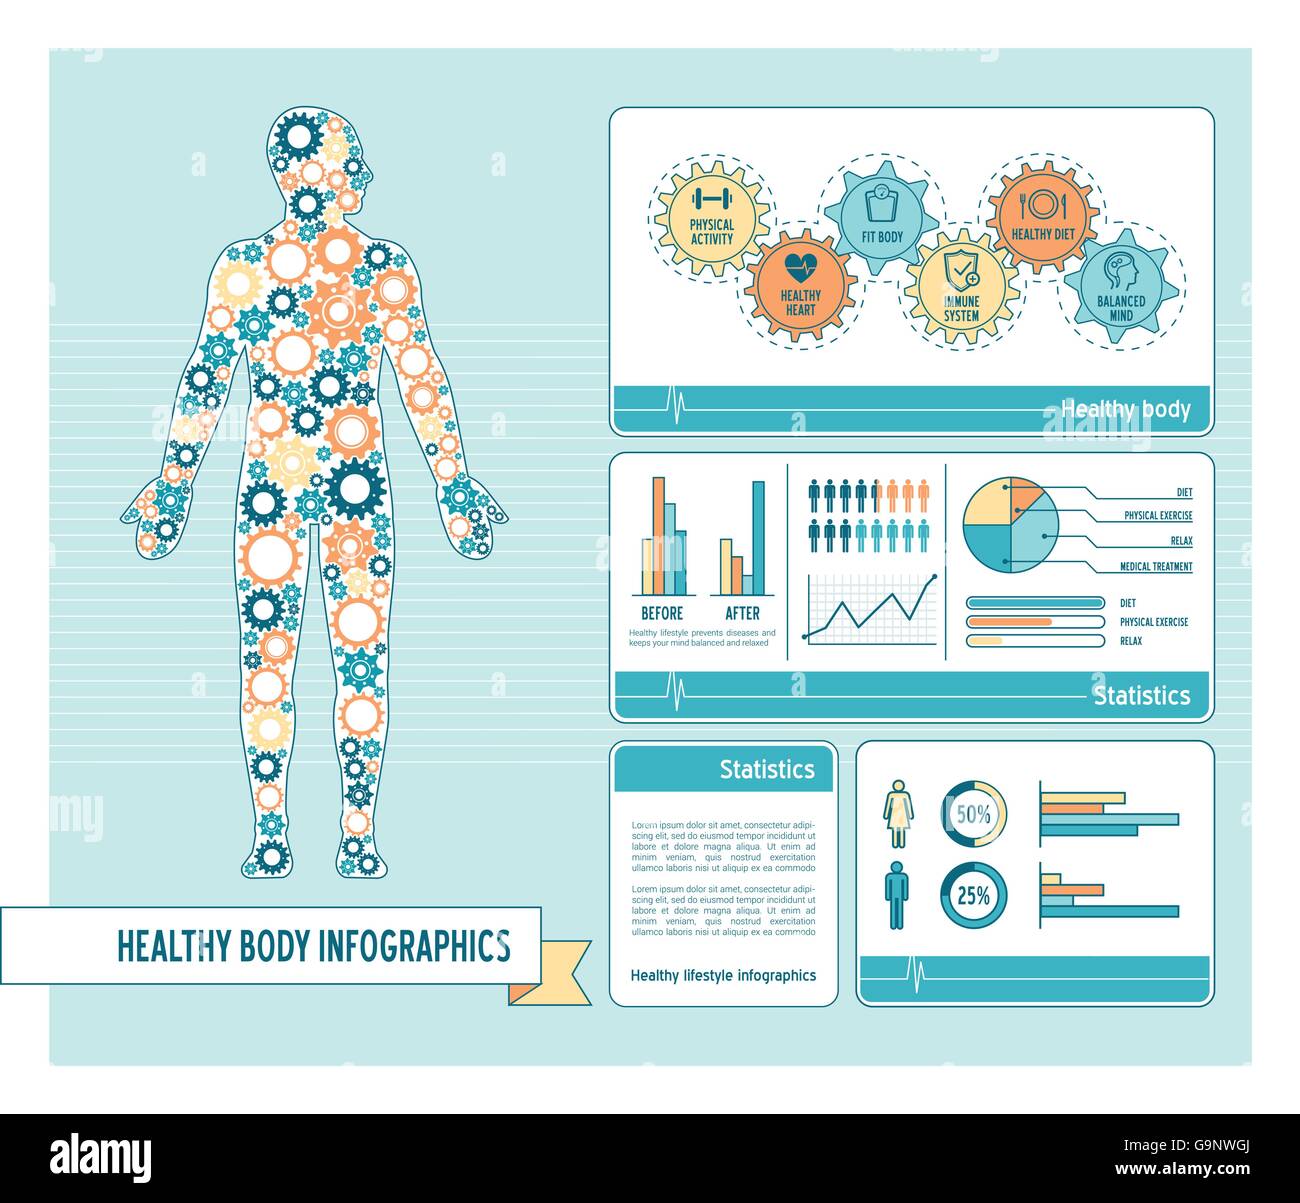 Corps en bonne santé et de style de vie avec l'infographie concept corps humain composé d'engrenages et des graphiques Illustration de Vecteur